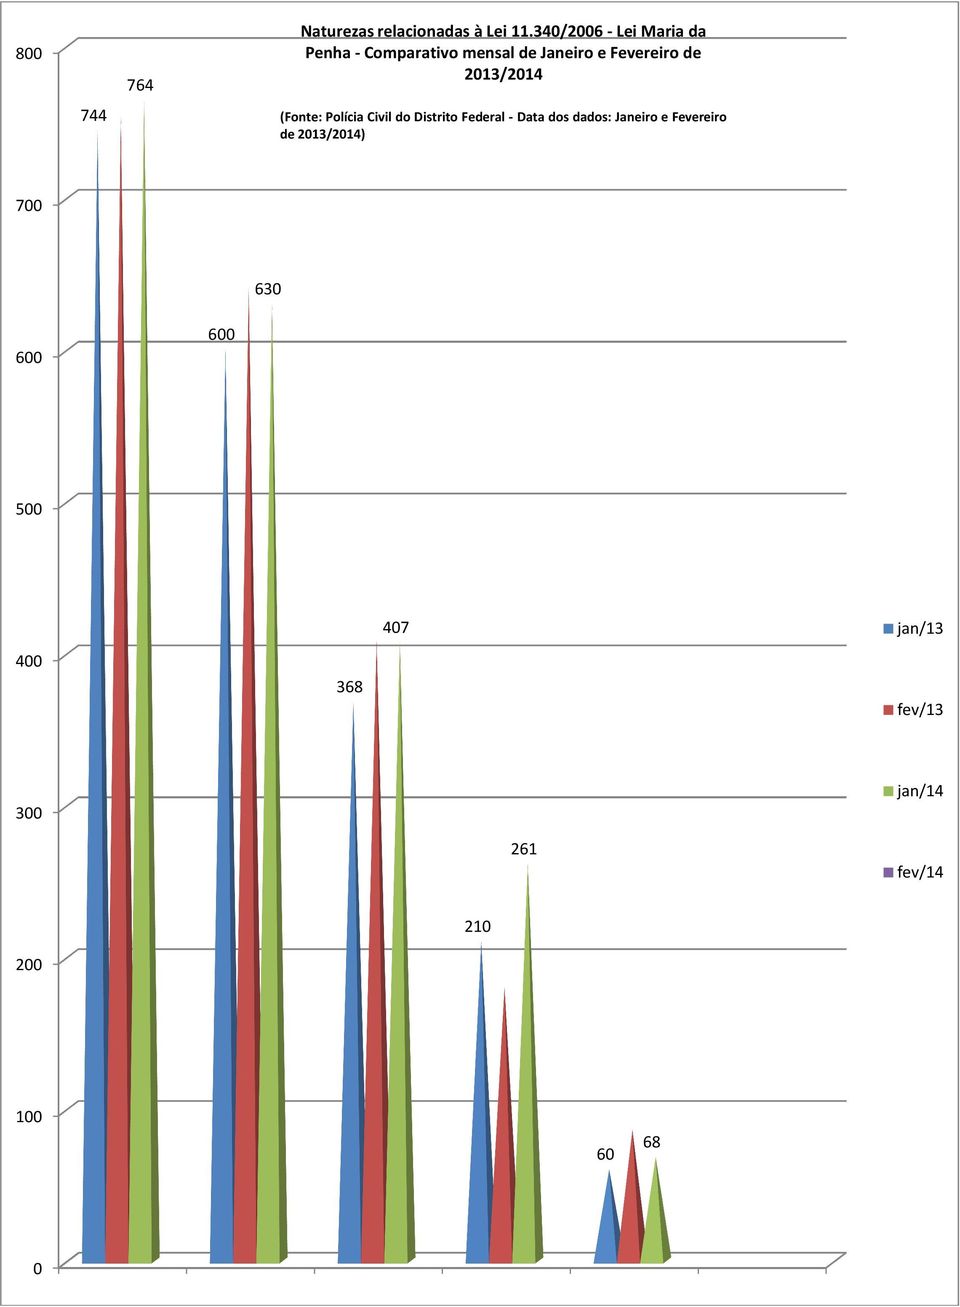 2013/2014 (Fonte: Polícia Civil do Distrito Federal - Data dos dados: Janeiro